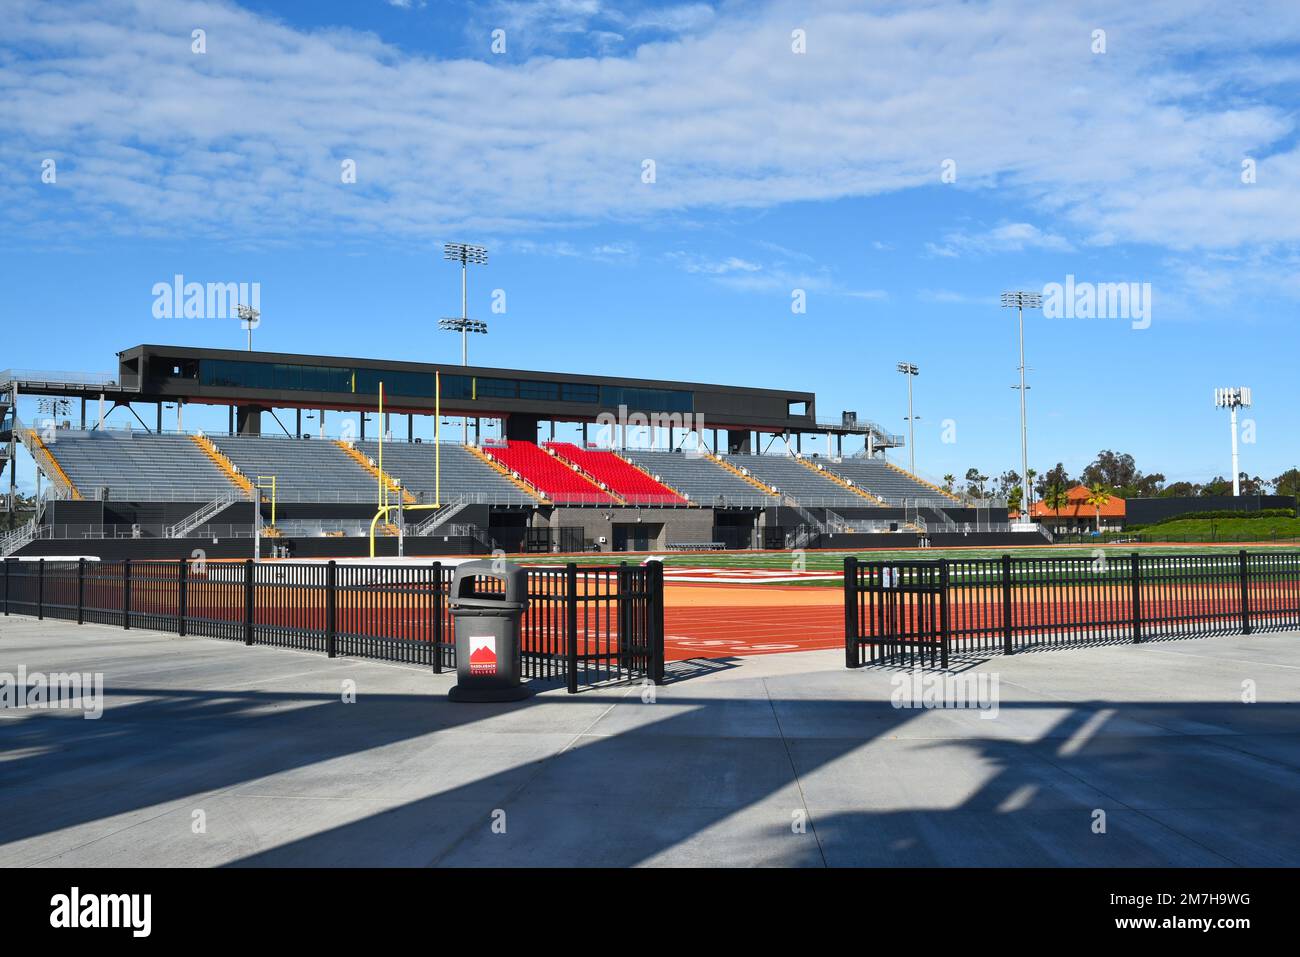 MISSION VIEJO, KALIFORNIEN - 8. JANUAR 2023: Fußballstadion-Haupttribüne auf dem Campus des Saddleback College. Stockfoto